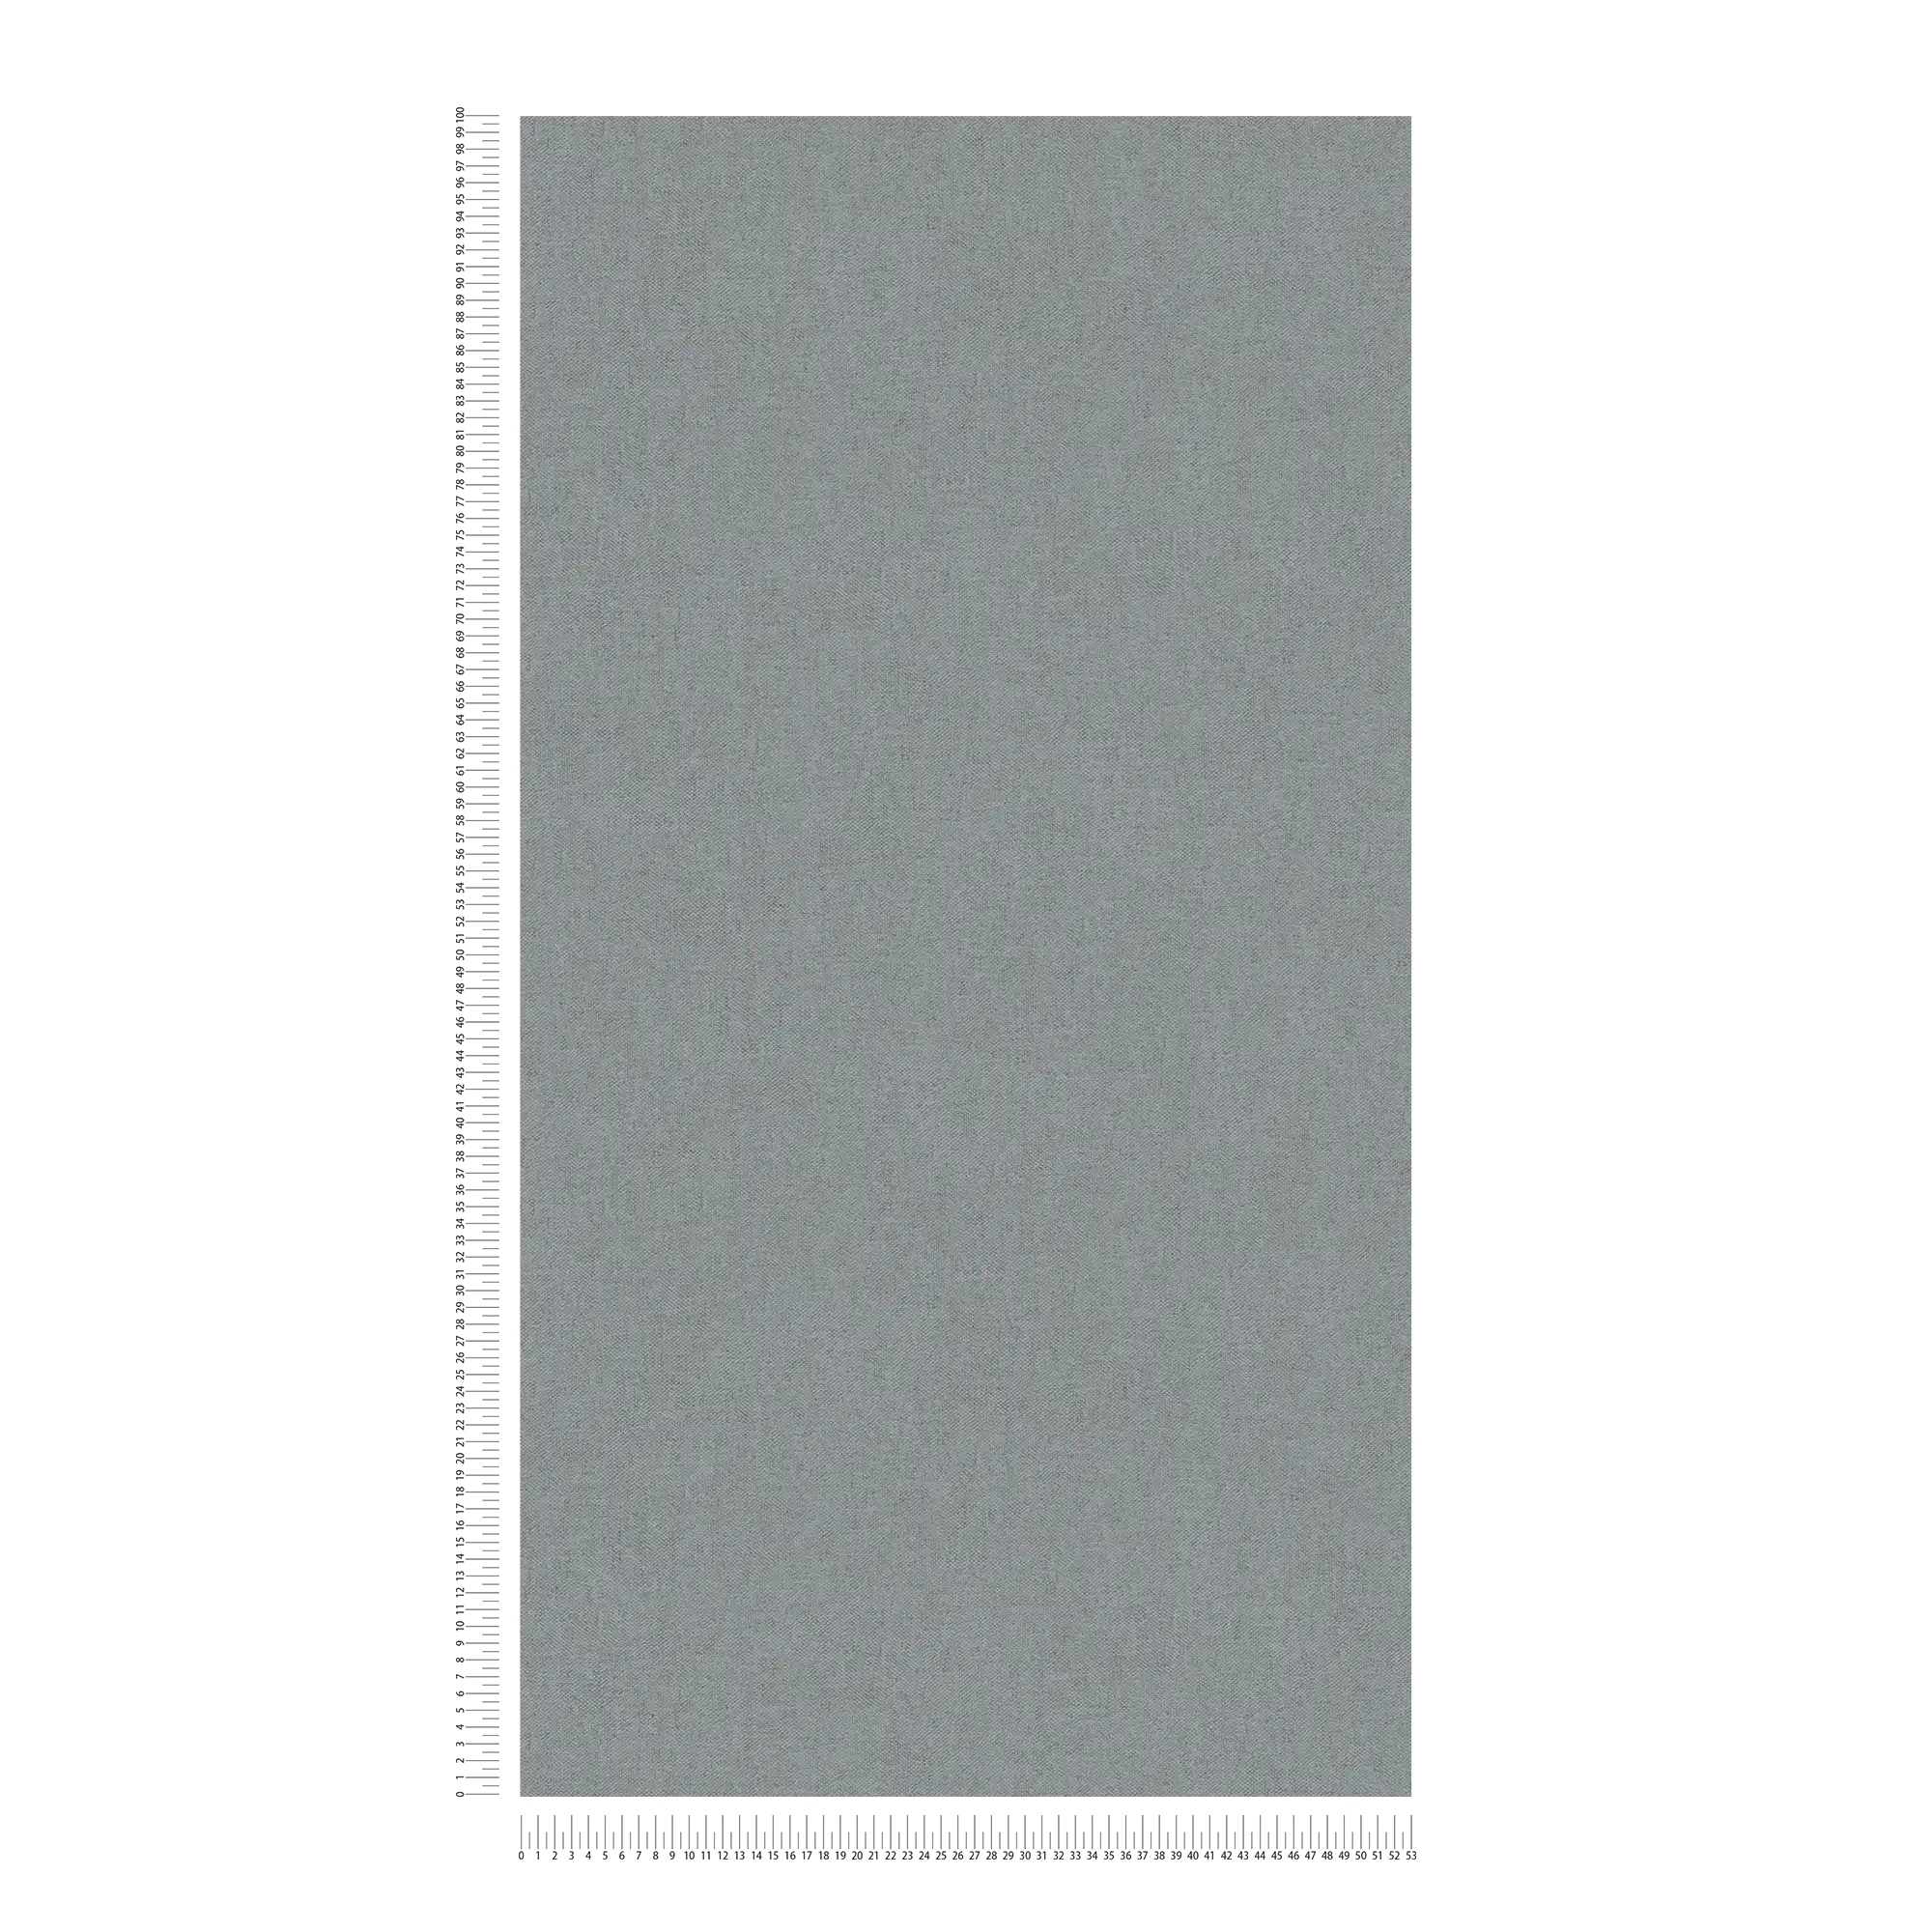             Carta da parati in simil-tessuto loden grigio con motivo strutturato
        